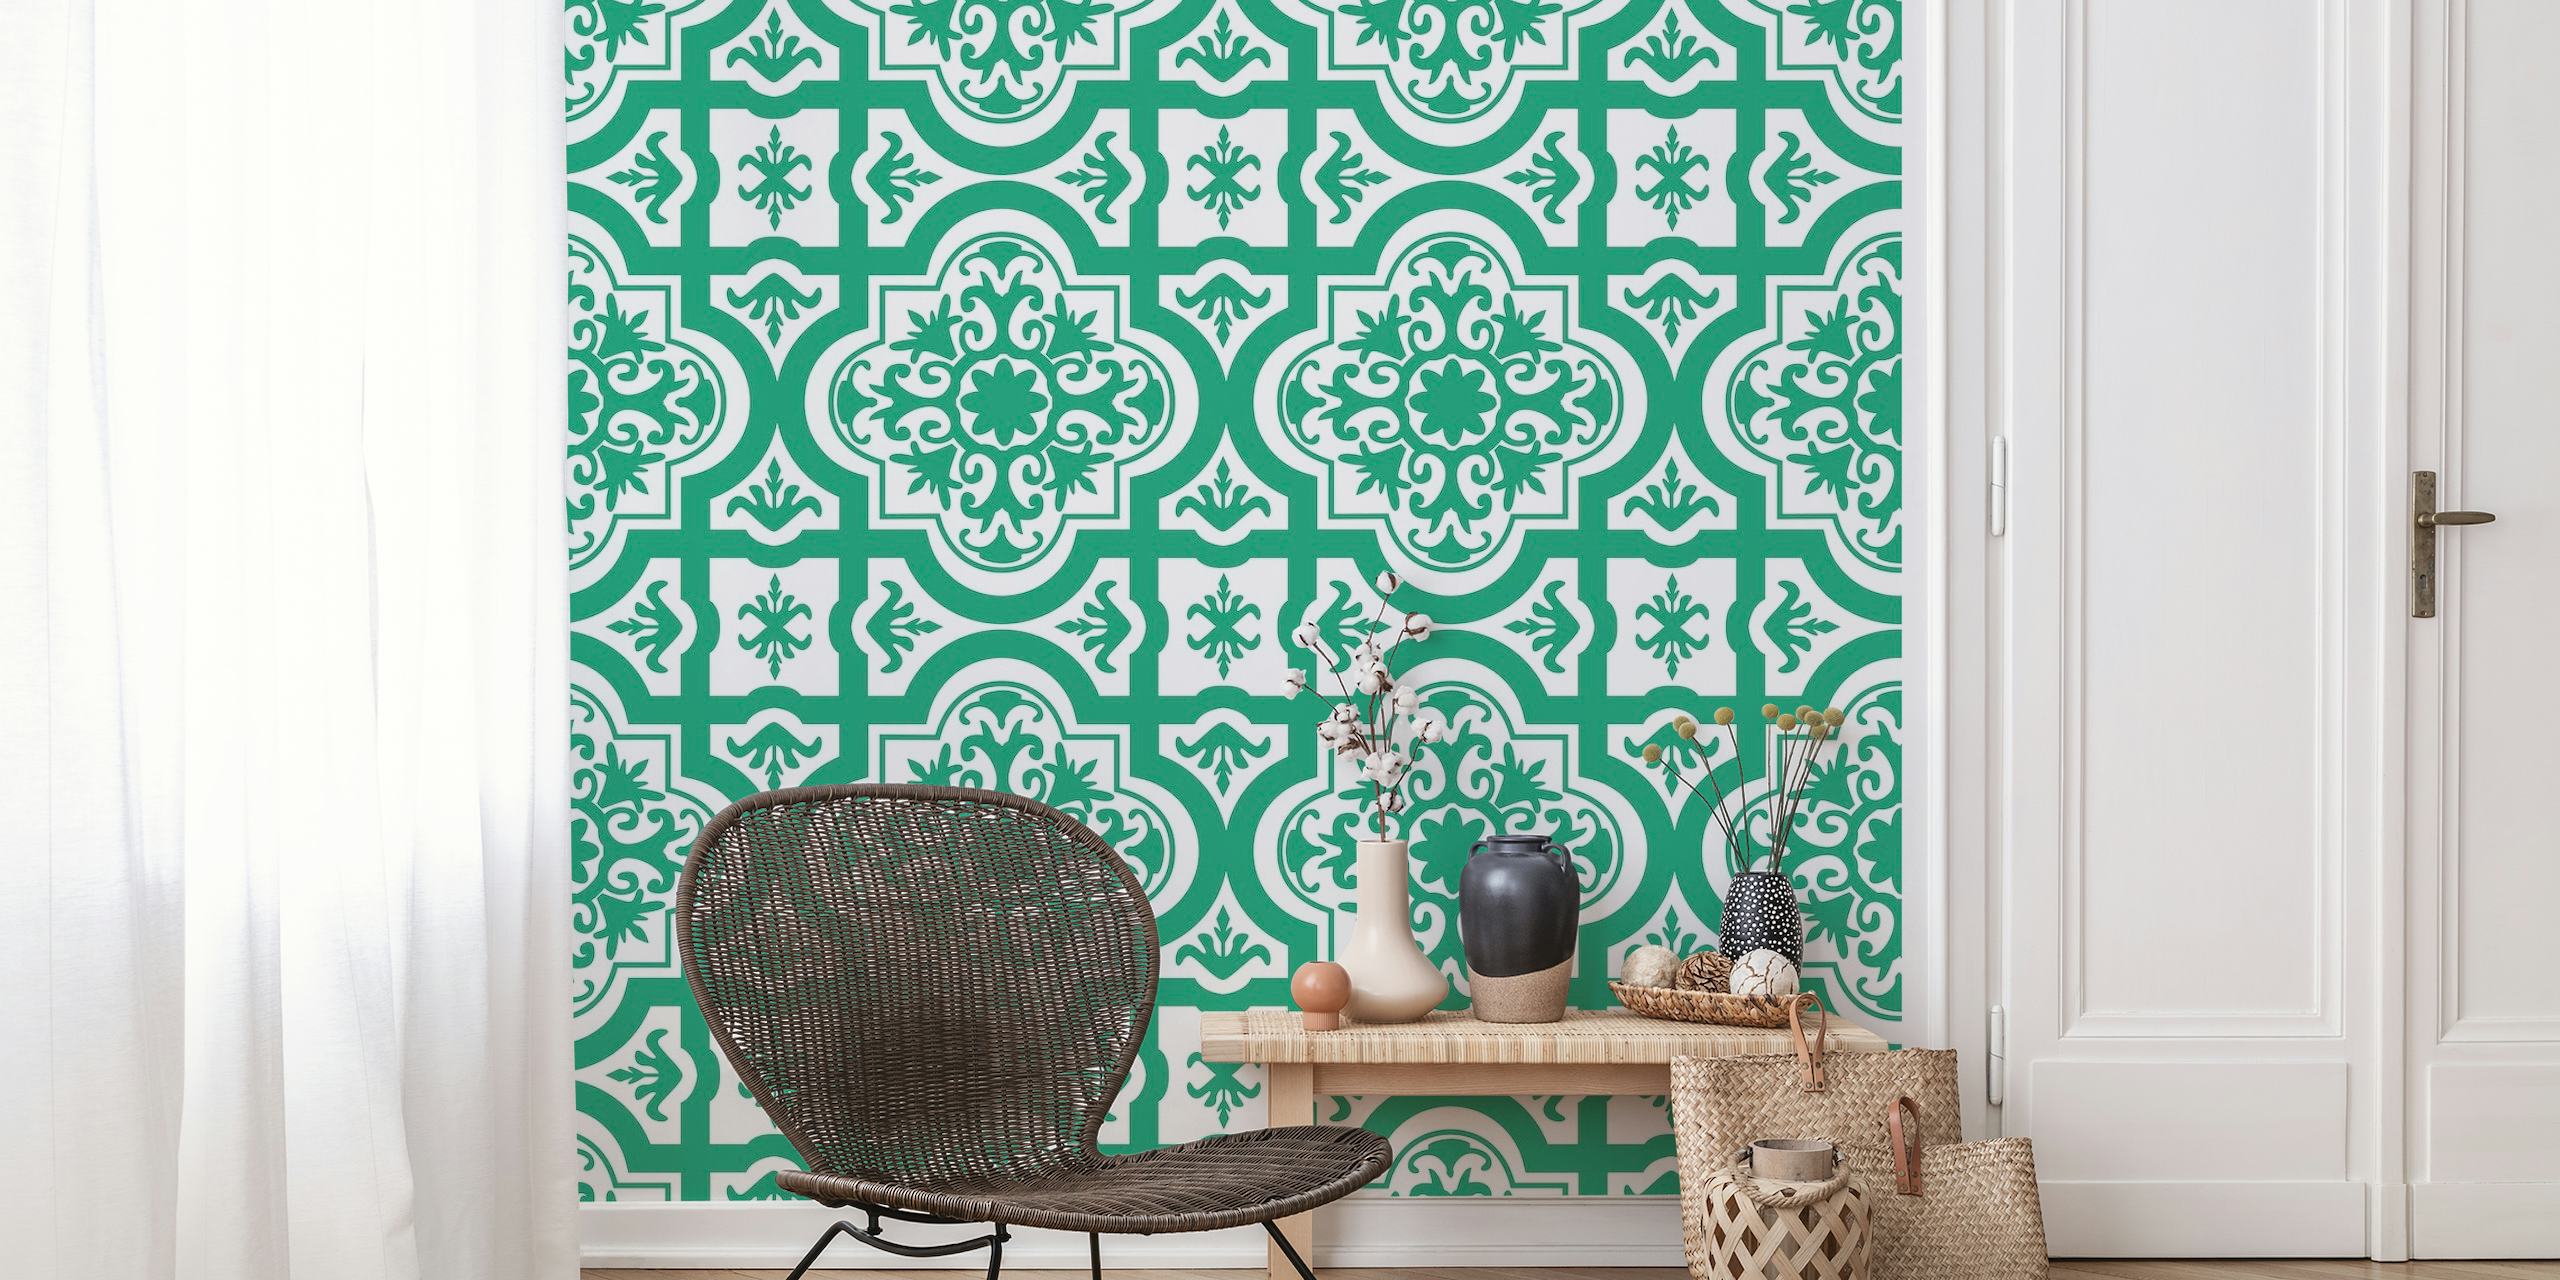 Turkkilainen vihreä ja valkoinen koristeellinen kuviollinen seinämaalaus